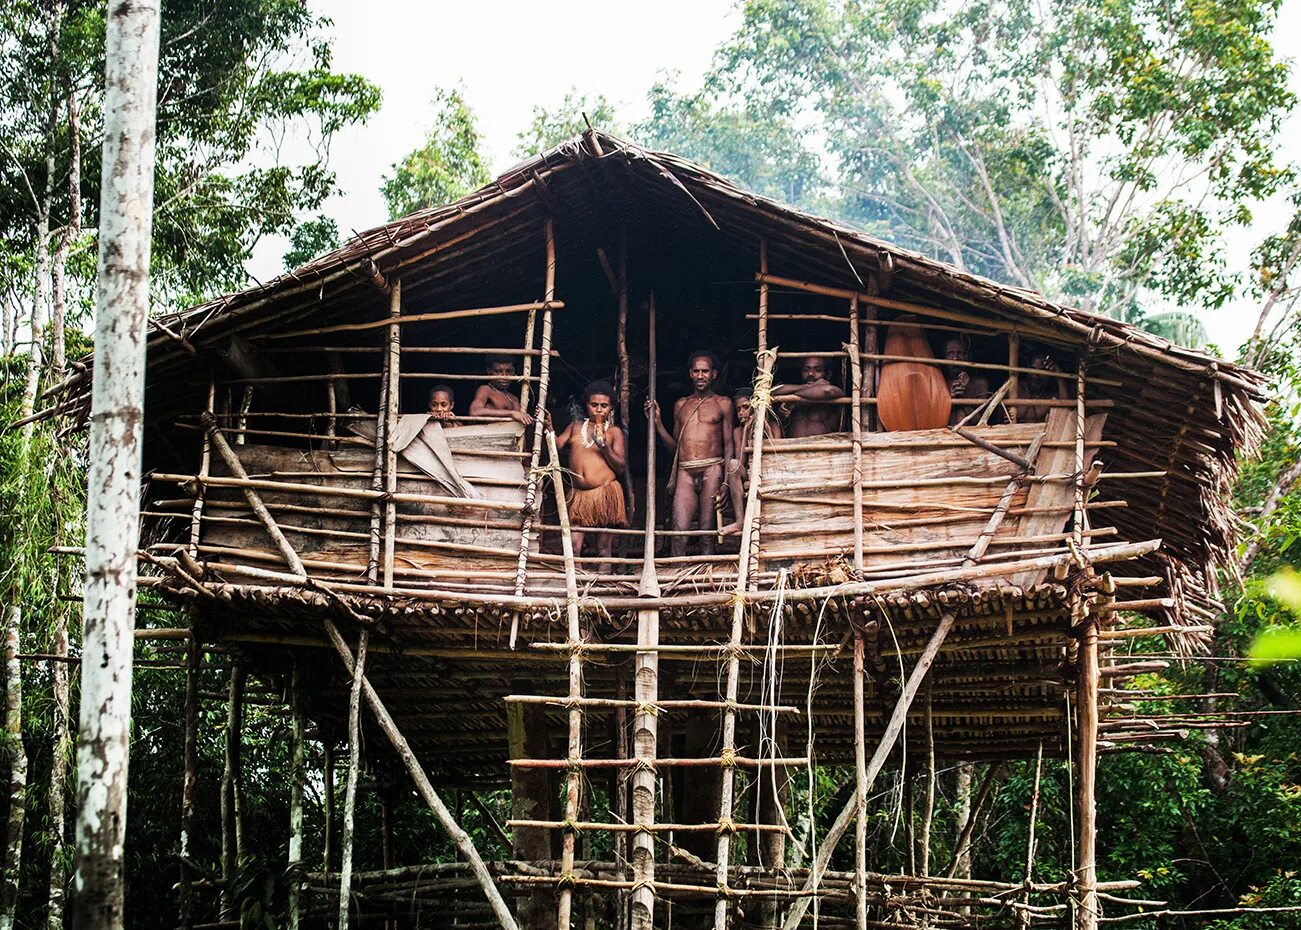 Племя КОРОВАИ Папуа новая Гвинея жилища на деревьях. Индонезия — племя КОРОВАИ. Новая Гвинея. Племя КОРОВАИ.